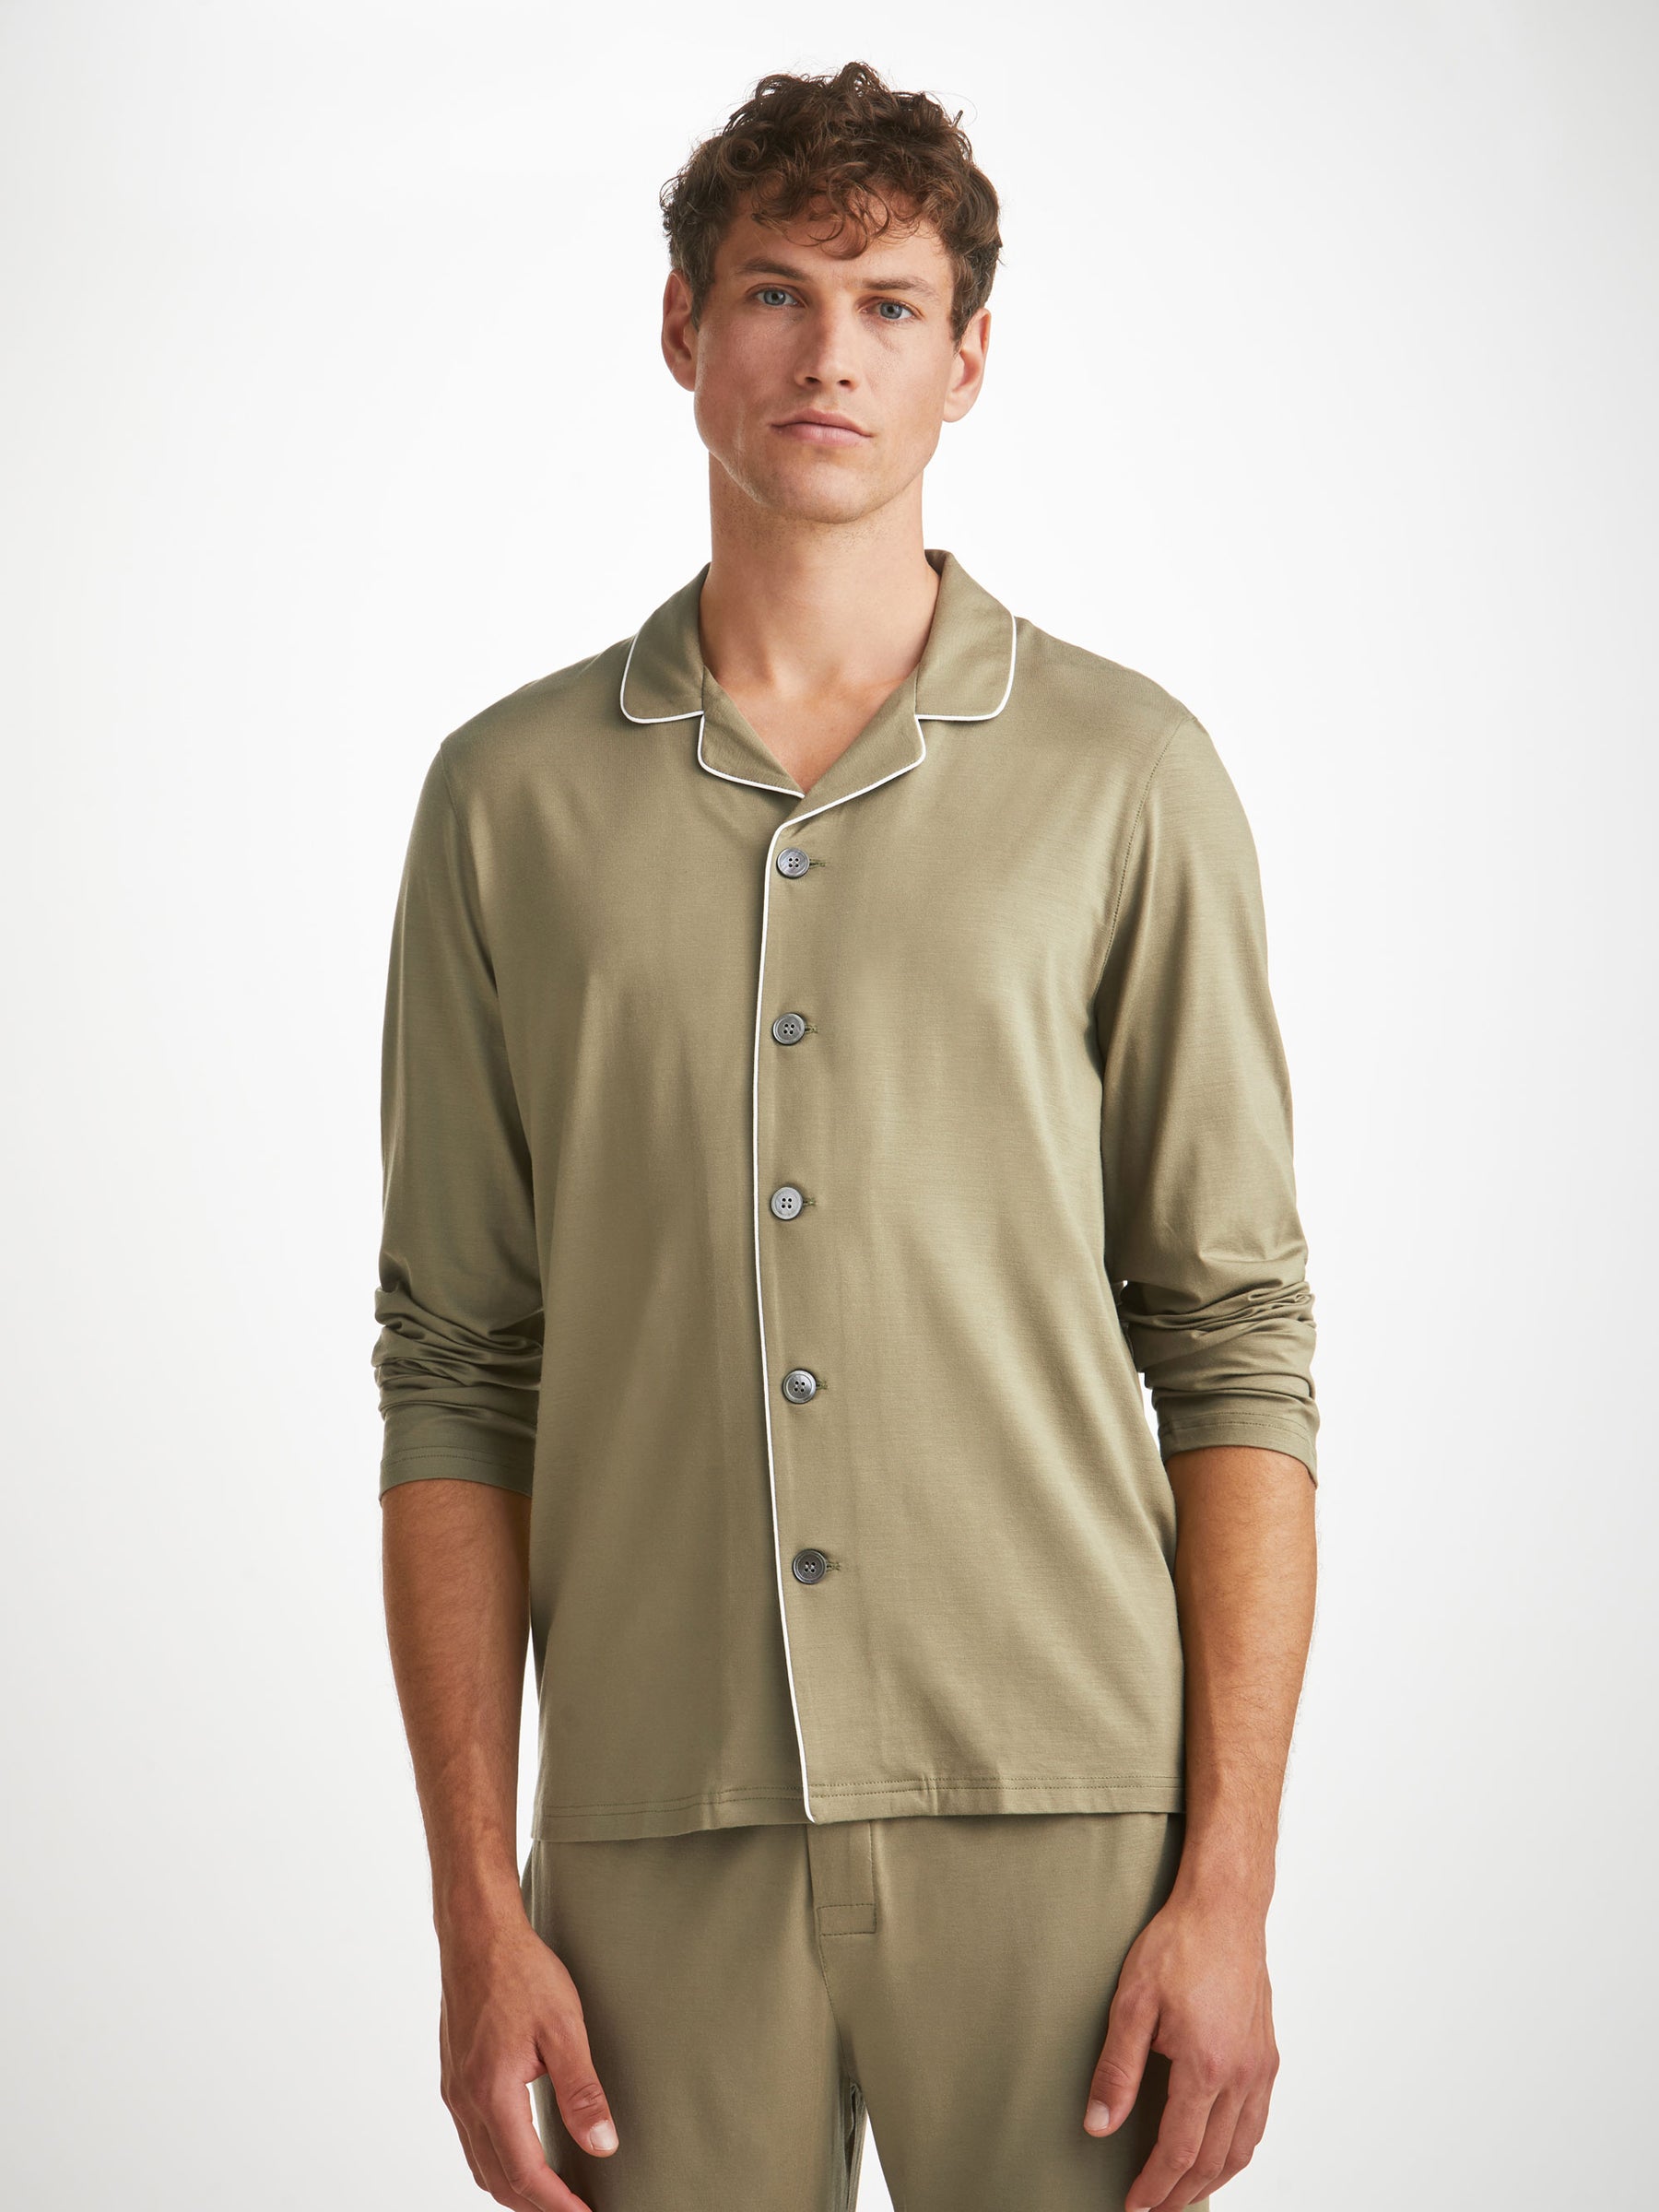 Men's Pyjamas Basel Micro Modal Stretch Khaki